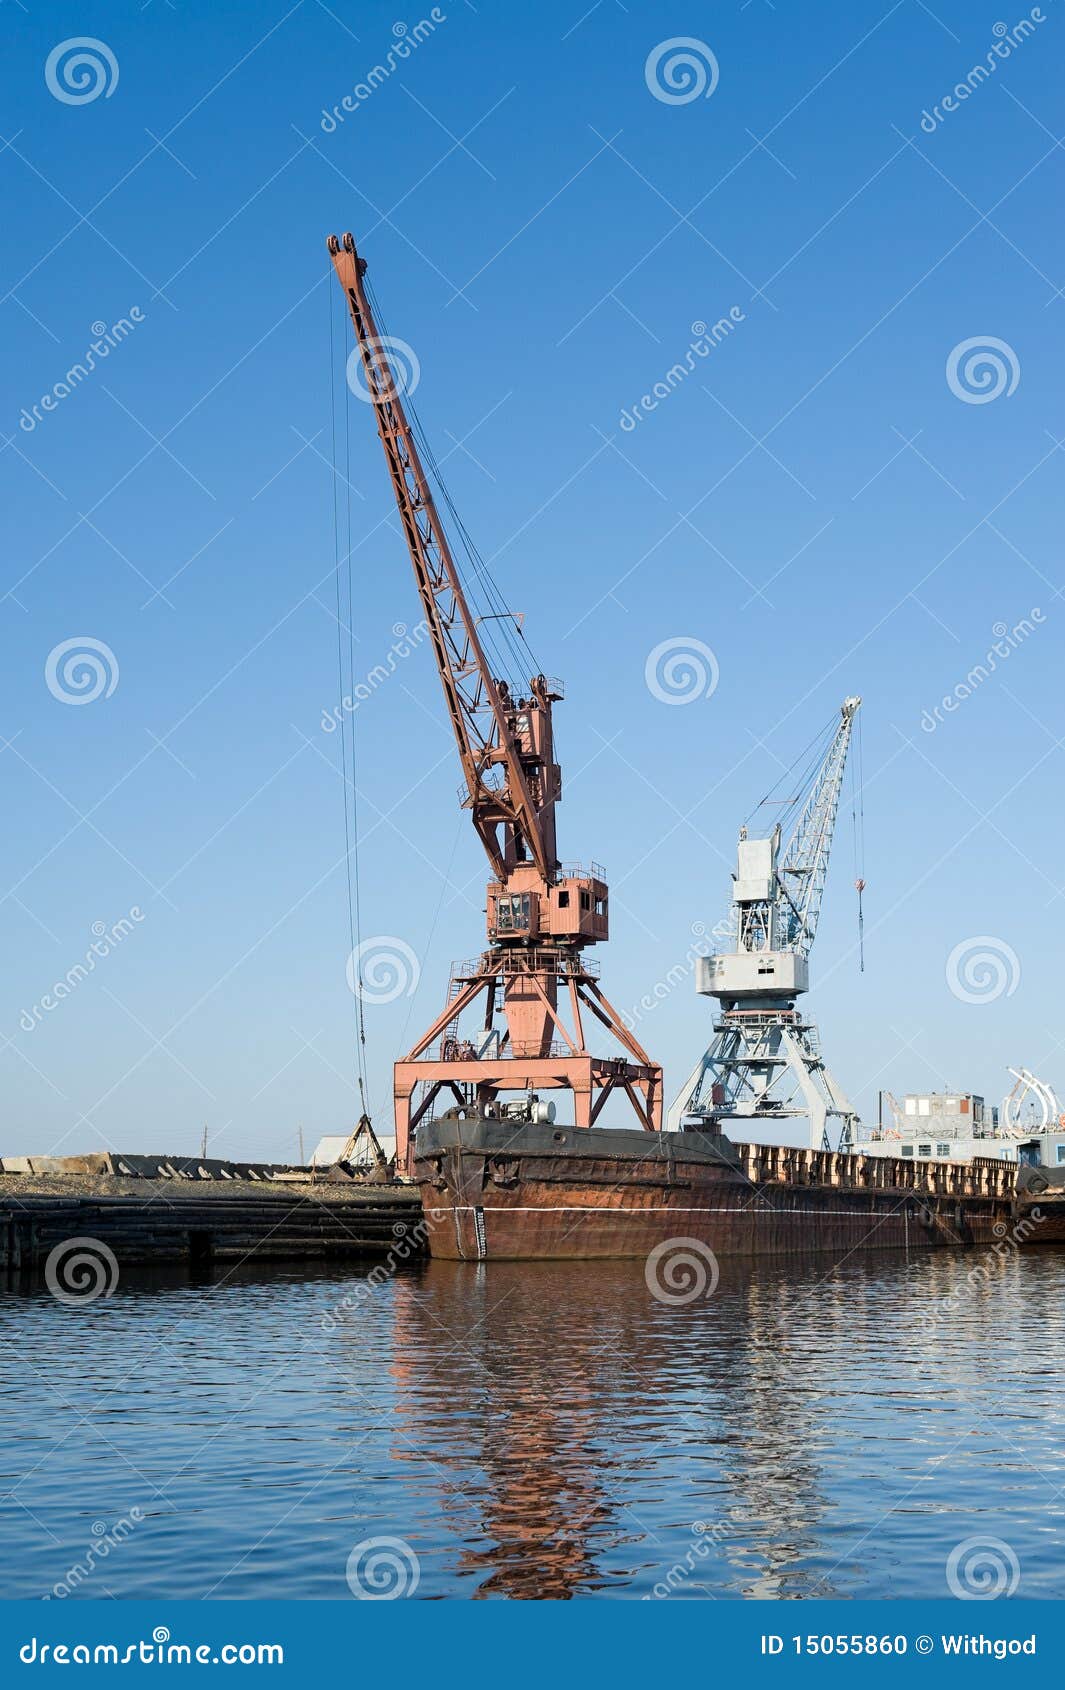 wharf with hoisting cranes